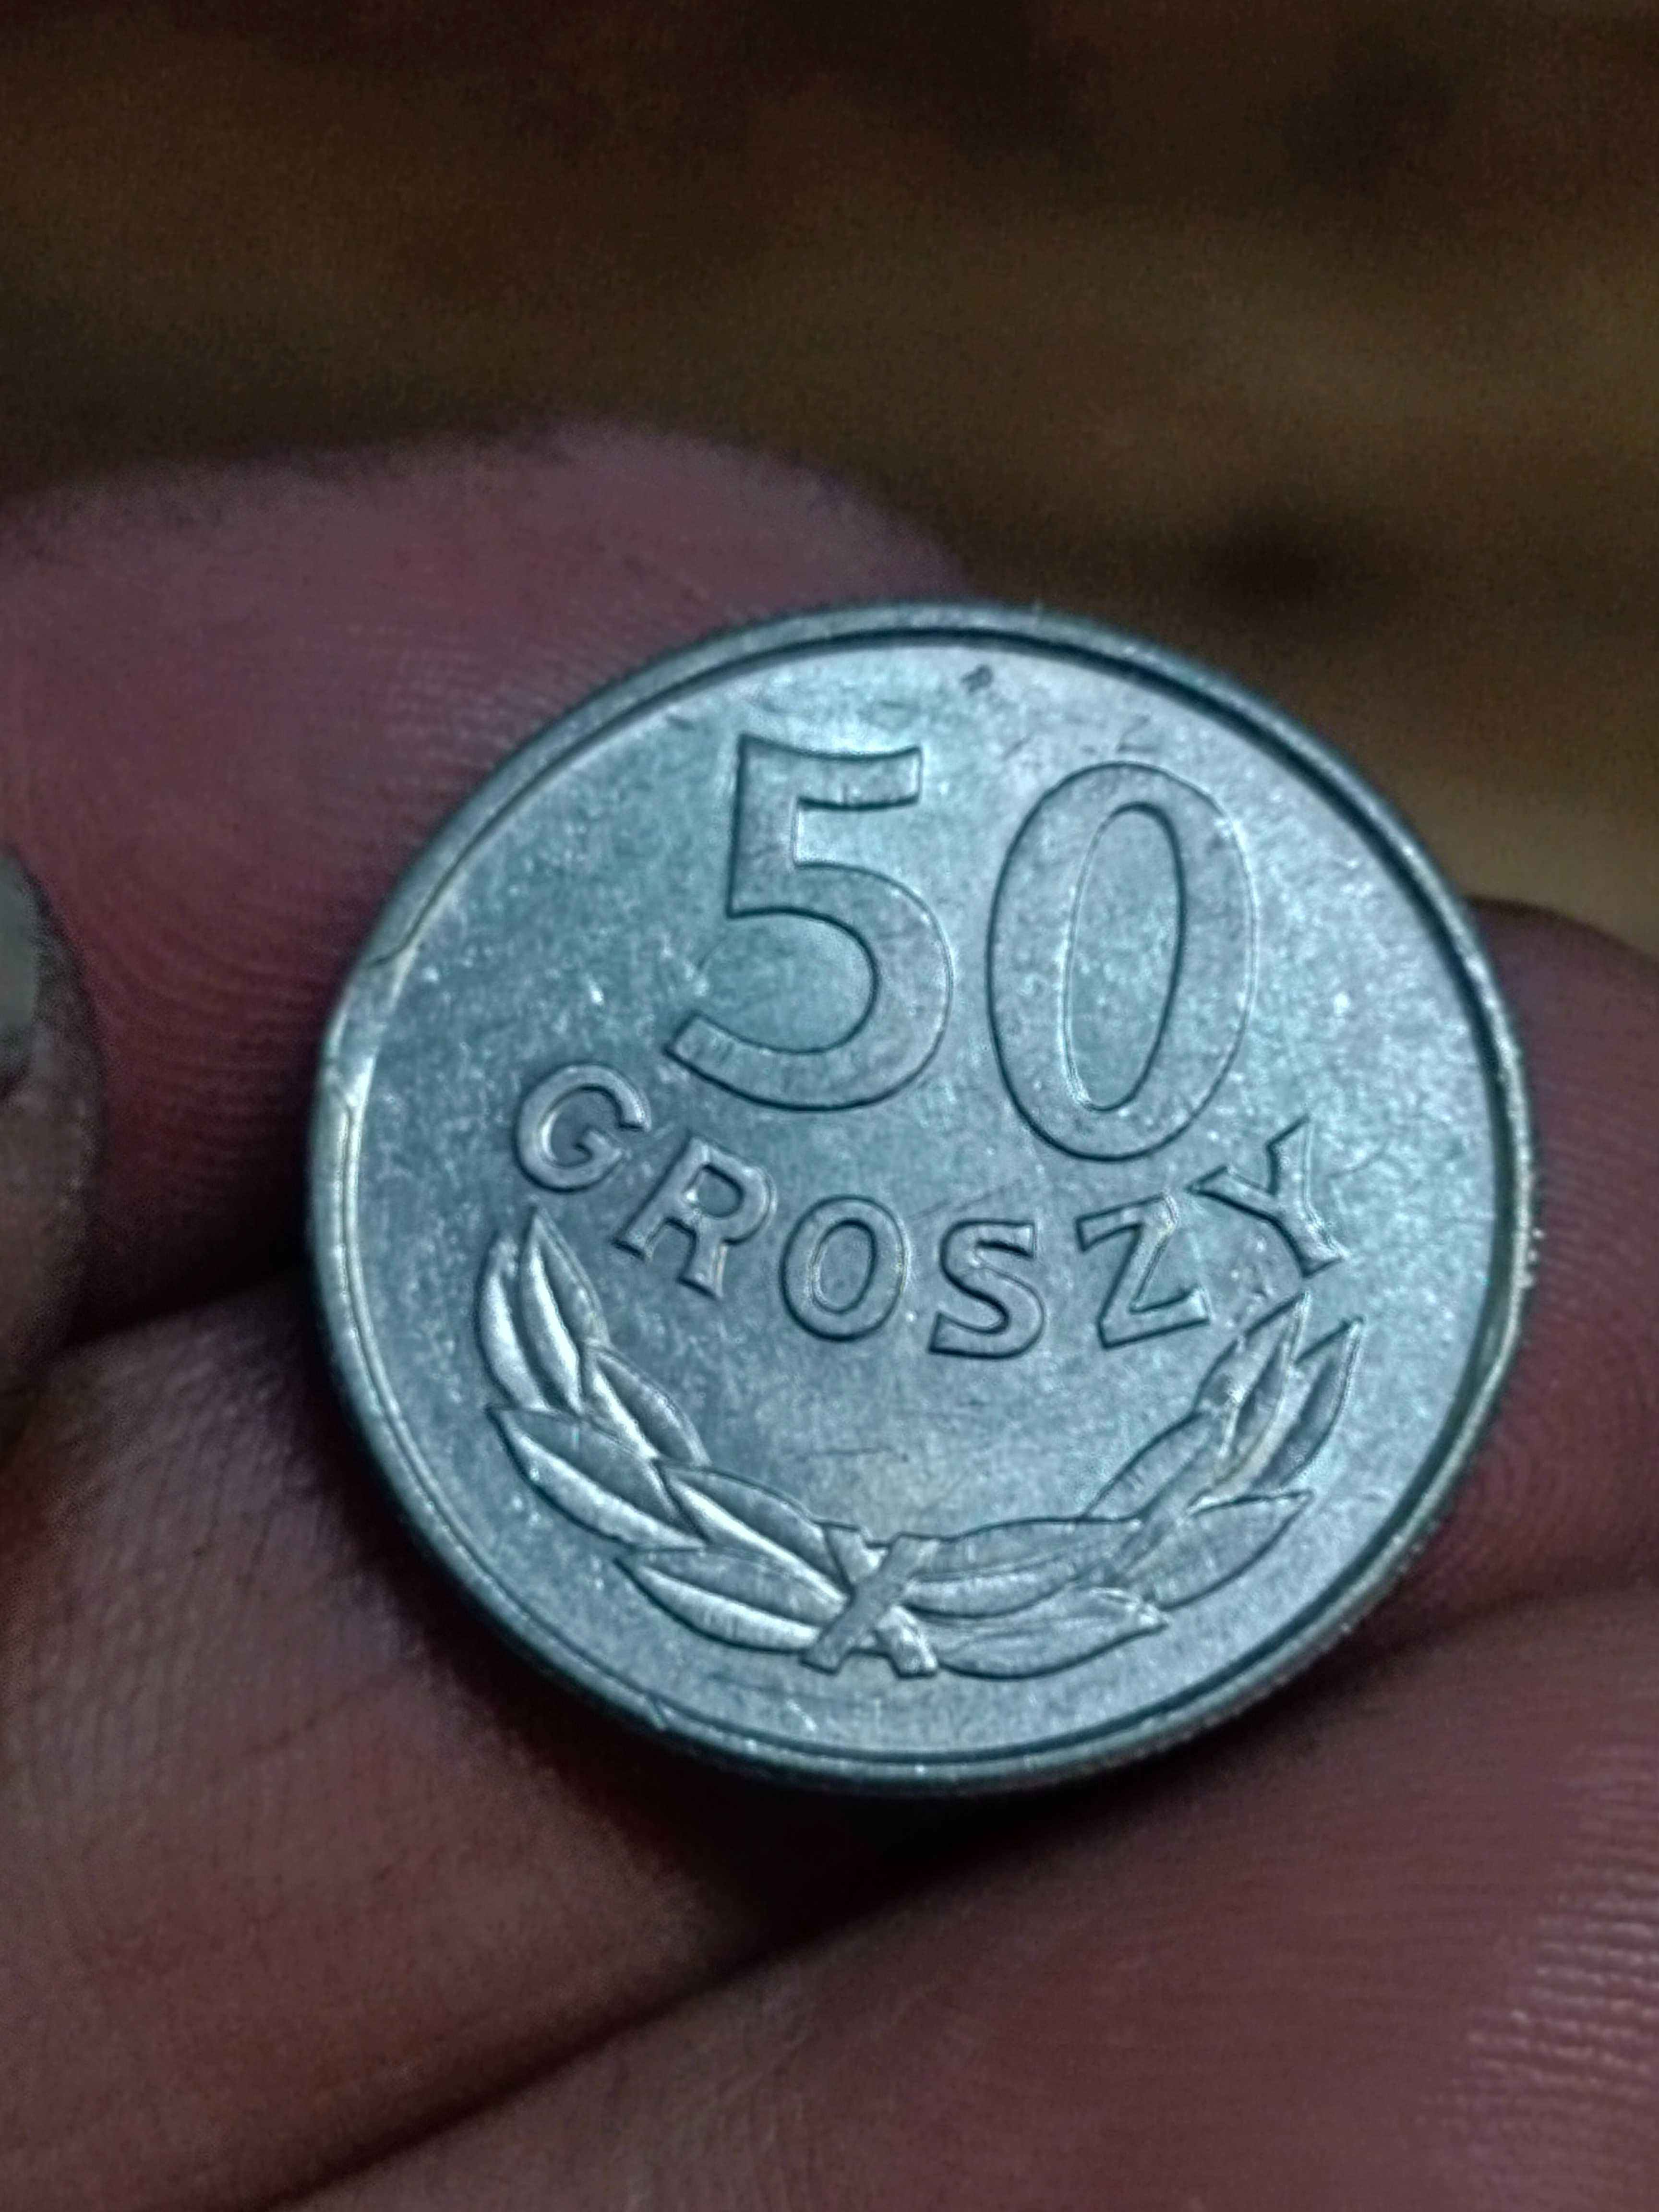 Sprzedam monete 50 groszy 1986 r destrukt koncowka blachy